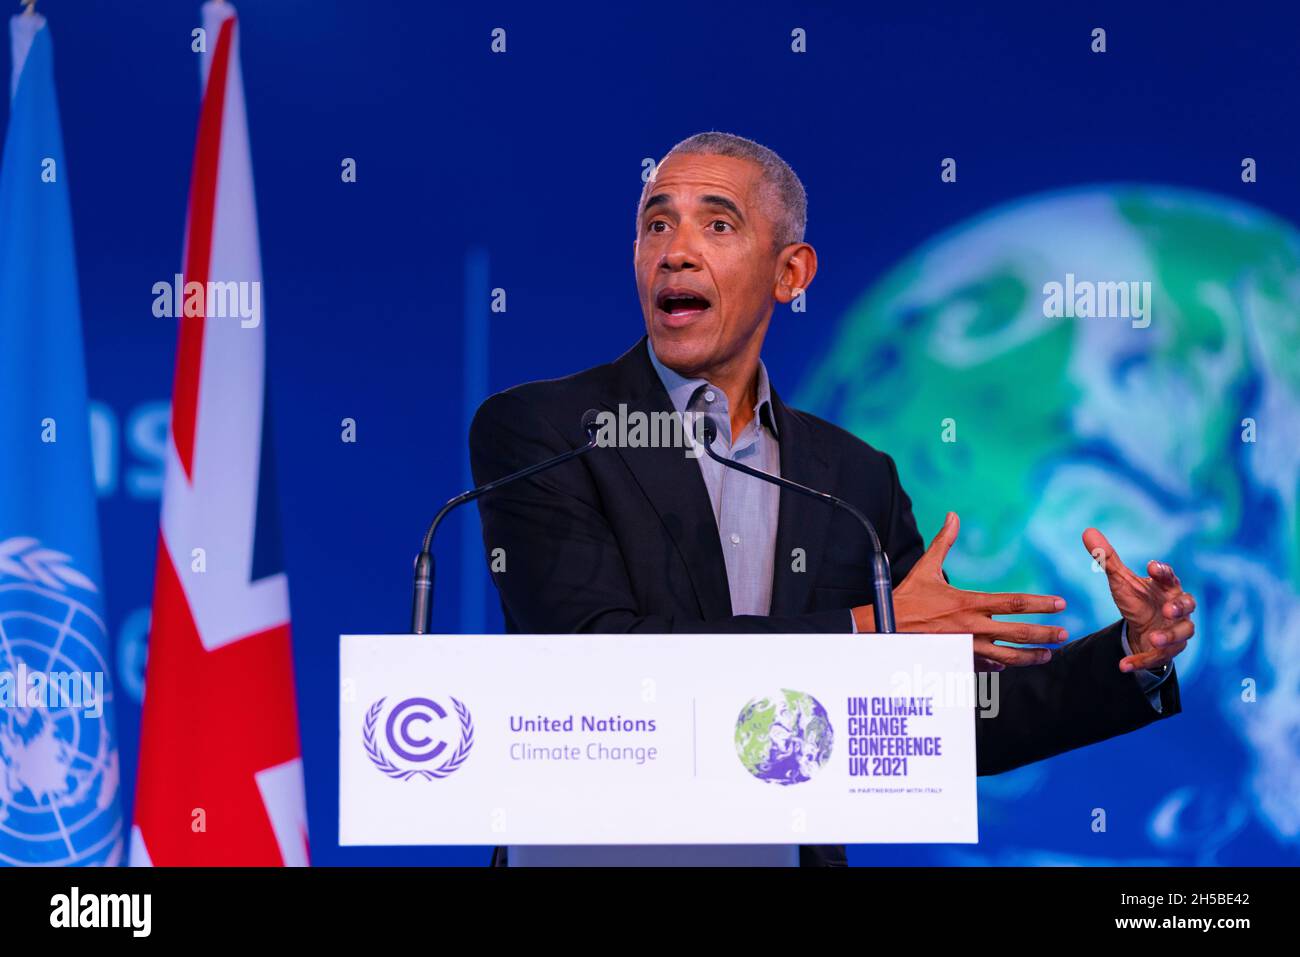 Glasgow, Scozia, Regno Unito. 8 novembre 2021. L'ex presidente americano Barack Obama ha tenuto un discorso ai delegati alla conferenza COP26 delle Nazioni Unite sui cambiamenti climatici che si terrà oggi a Glasgow. Iain Masterton/Alamy Live News. Foto Stock